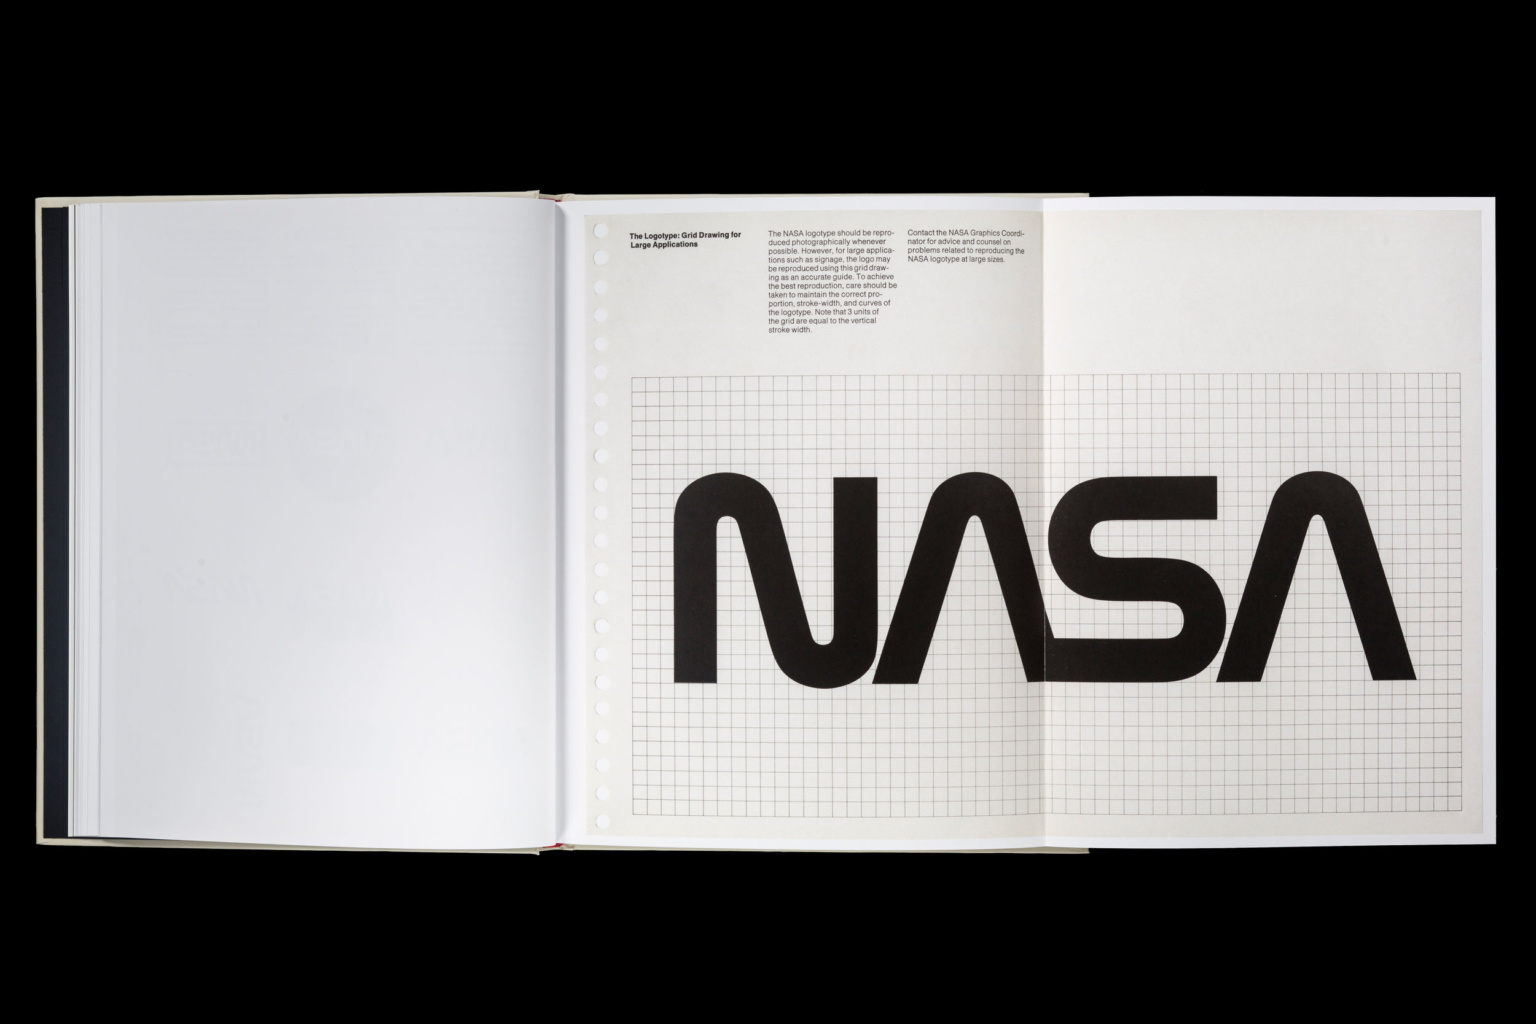 Il manuale grafico della NASA del 1975